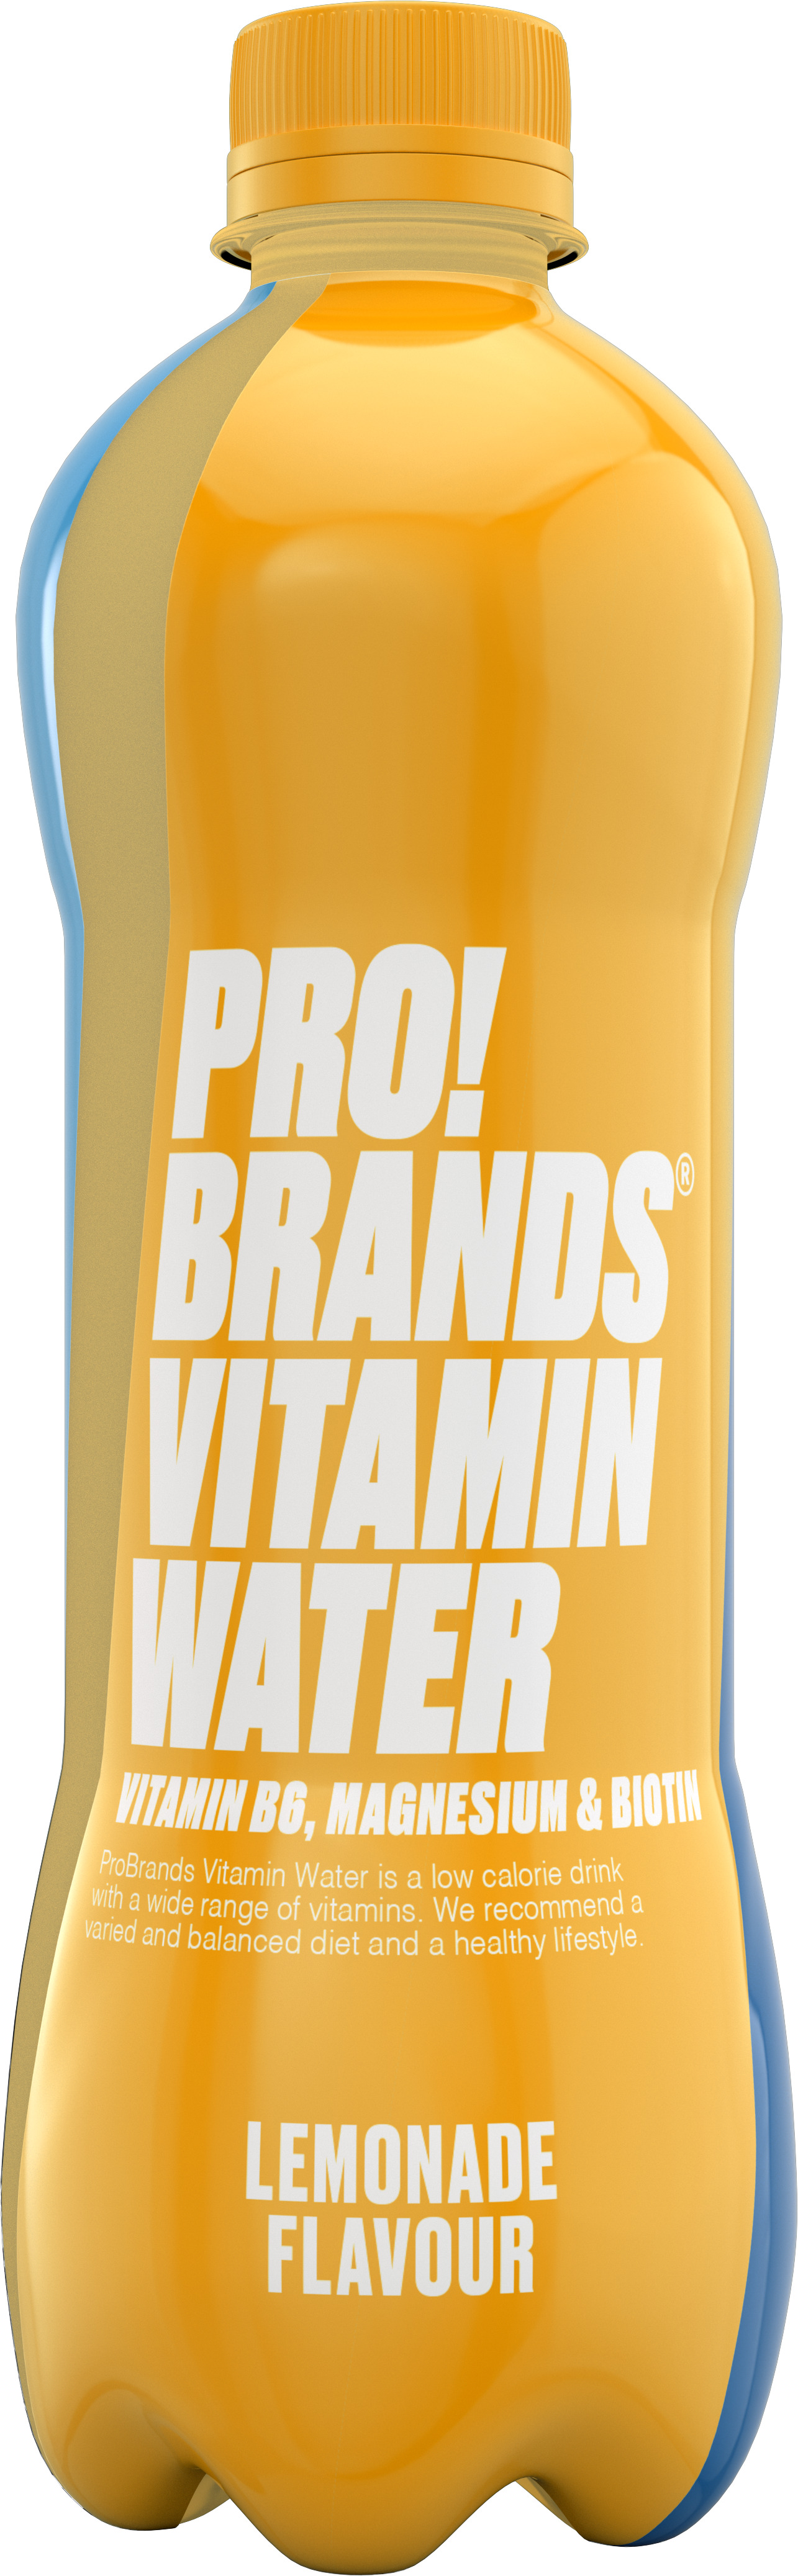 ProBrands Vitamin Water Lemonade 555 ml